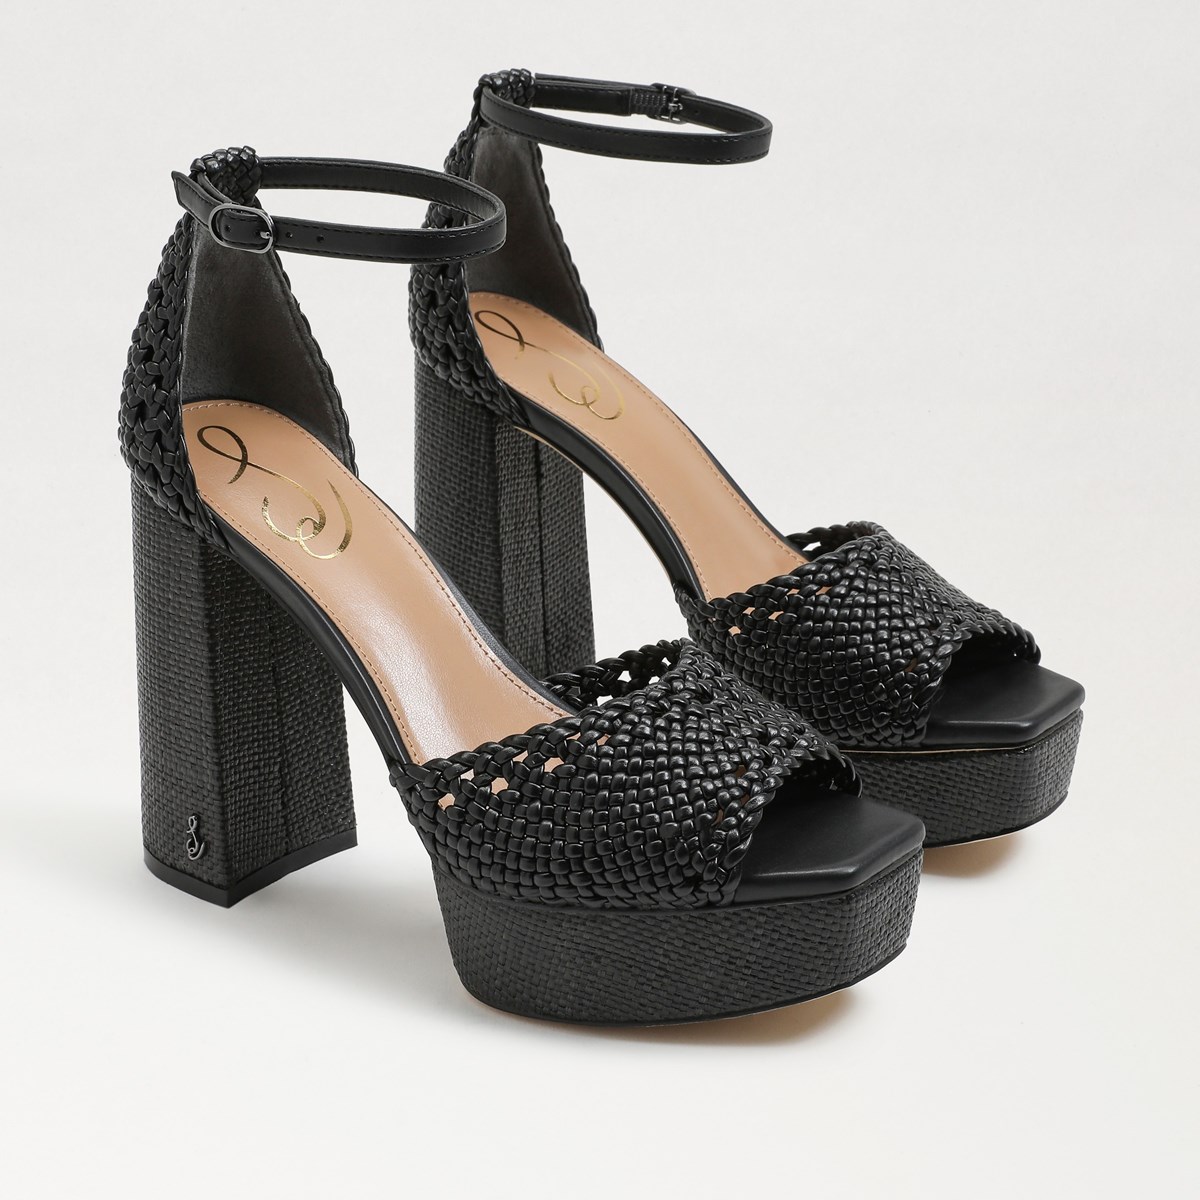 ممارسه الرياضه الآفاق صبي  Sam Edelman Nattie Platform Heel Sandal, Summer Sand Leather | Womens  Sandals